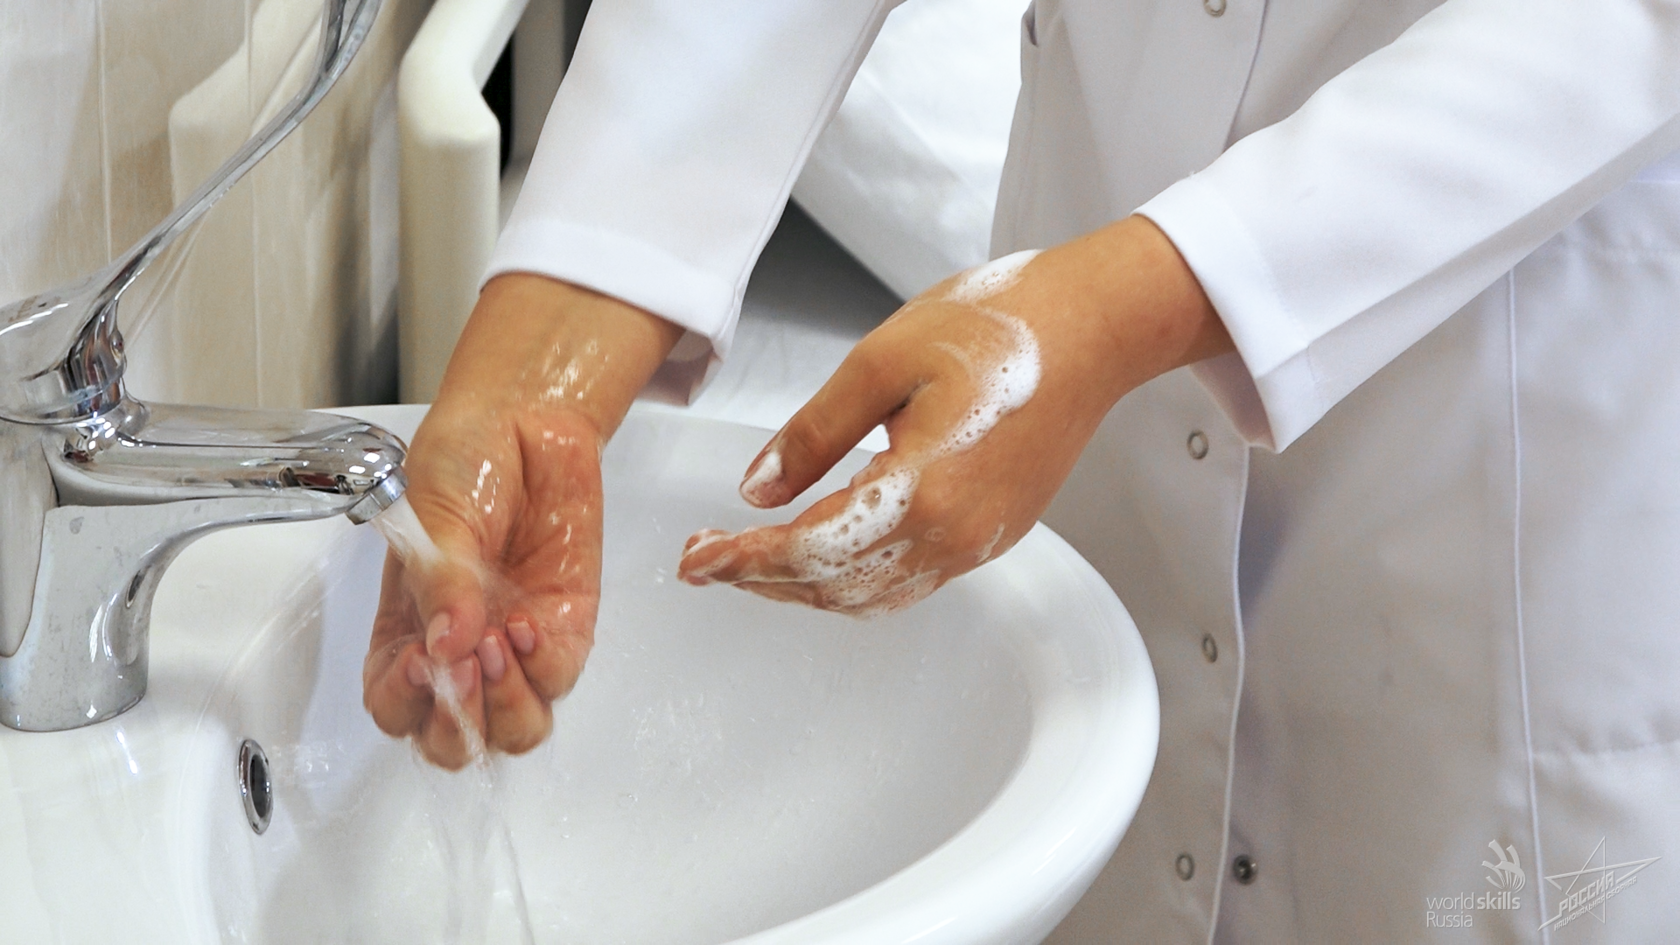 Обработка рук. Гигиеническая обработка рук. Гигиеническое мытье рук. Гигиеническая мойка рук.